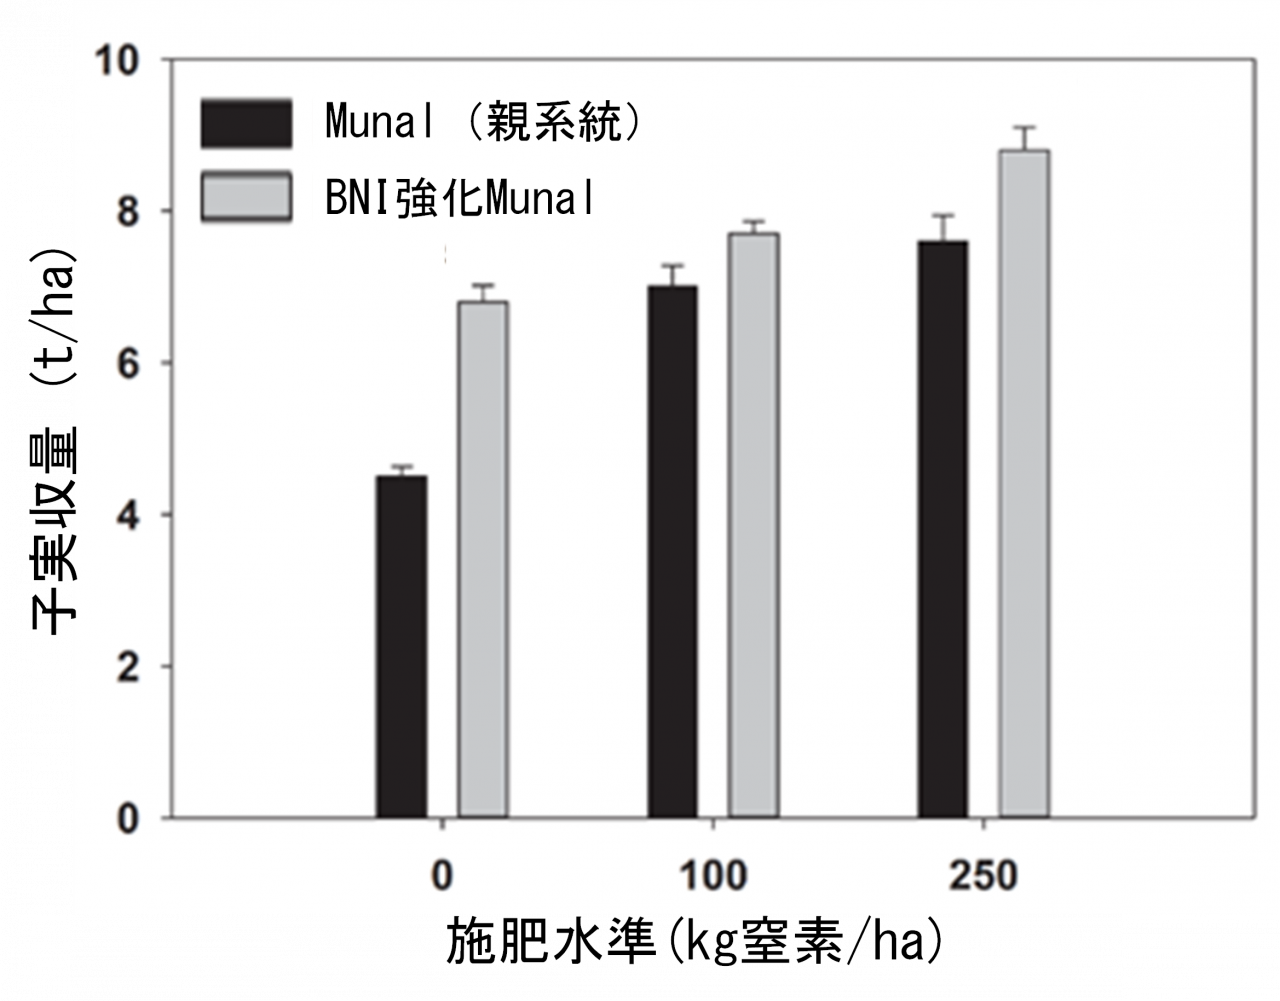 図4. BNI強化Munalの窒素施肥と収量